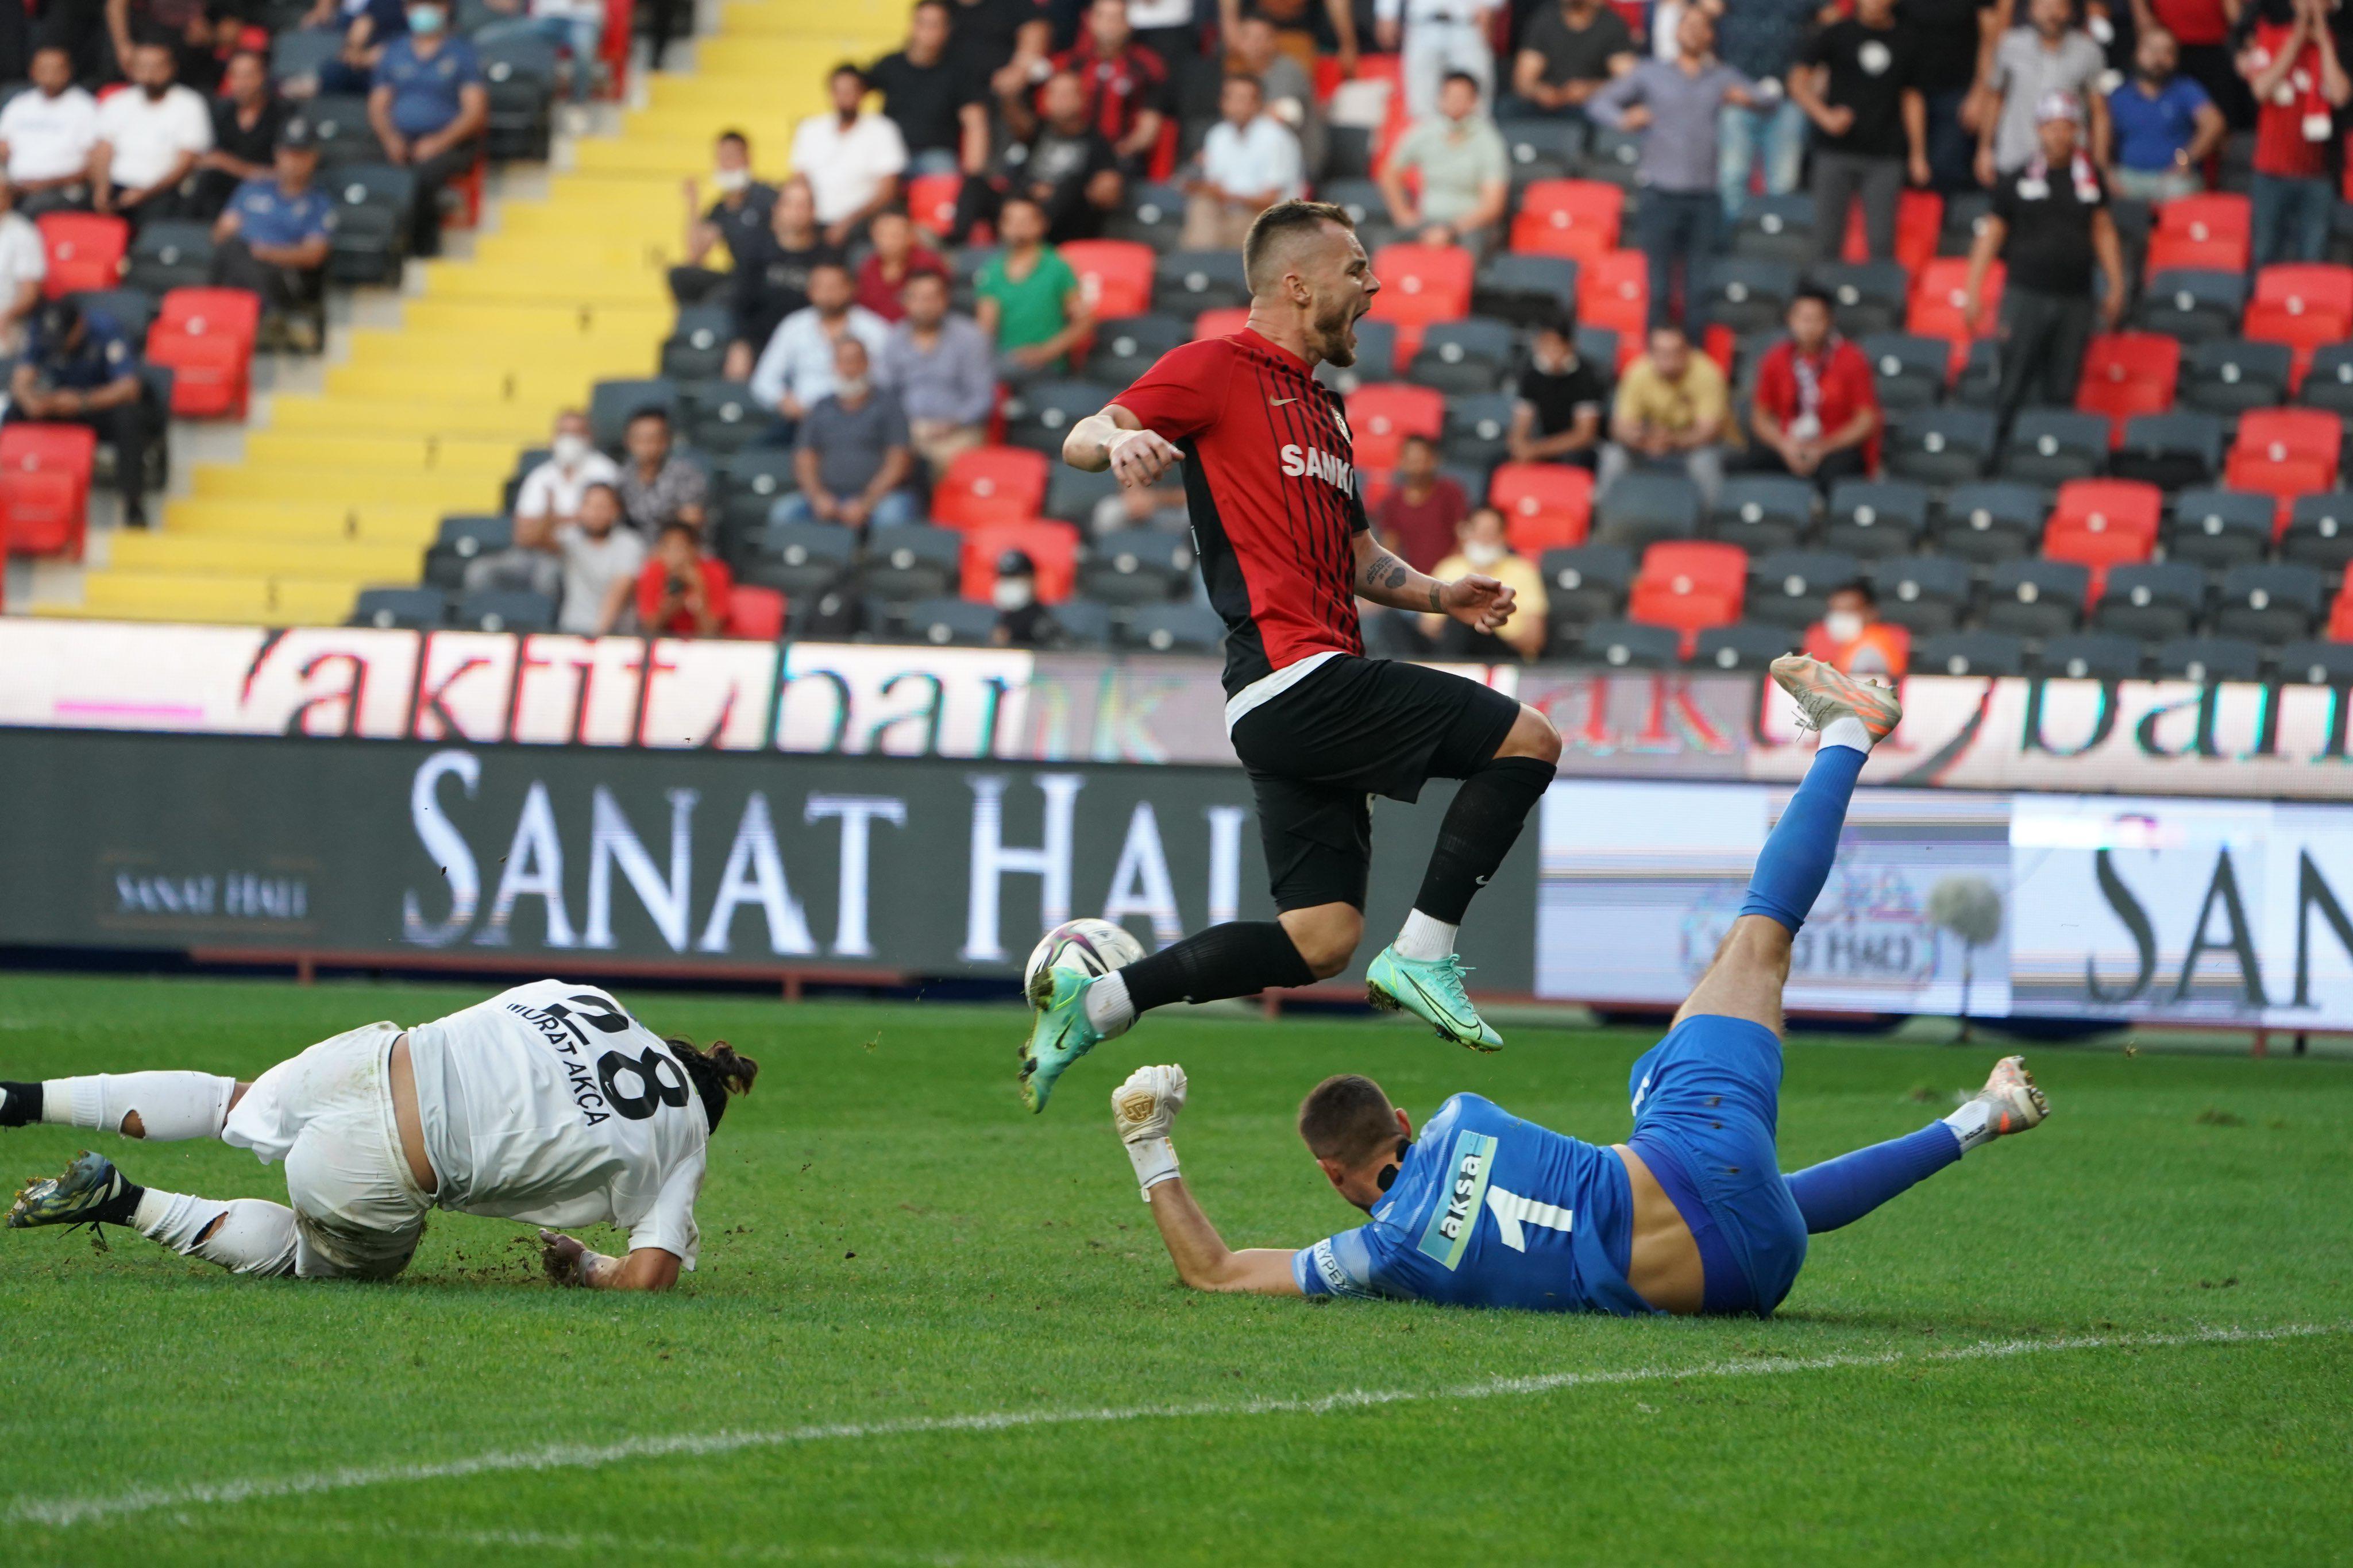 ÖZET | Gaziantep FK - Altay maç sonucu: 4-1